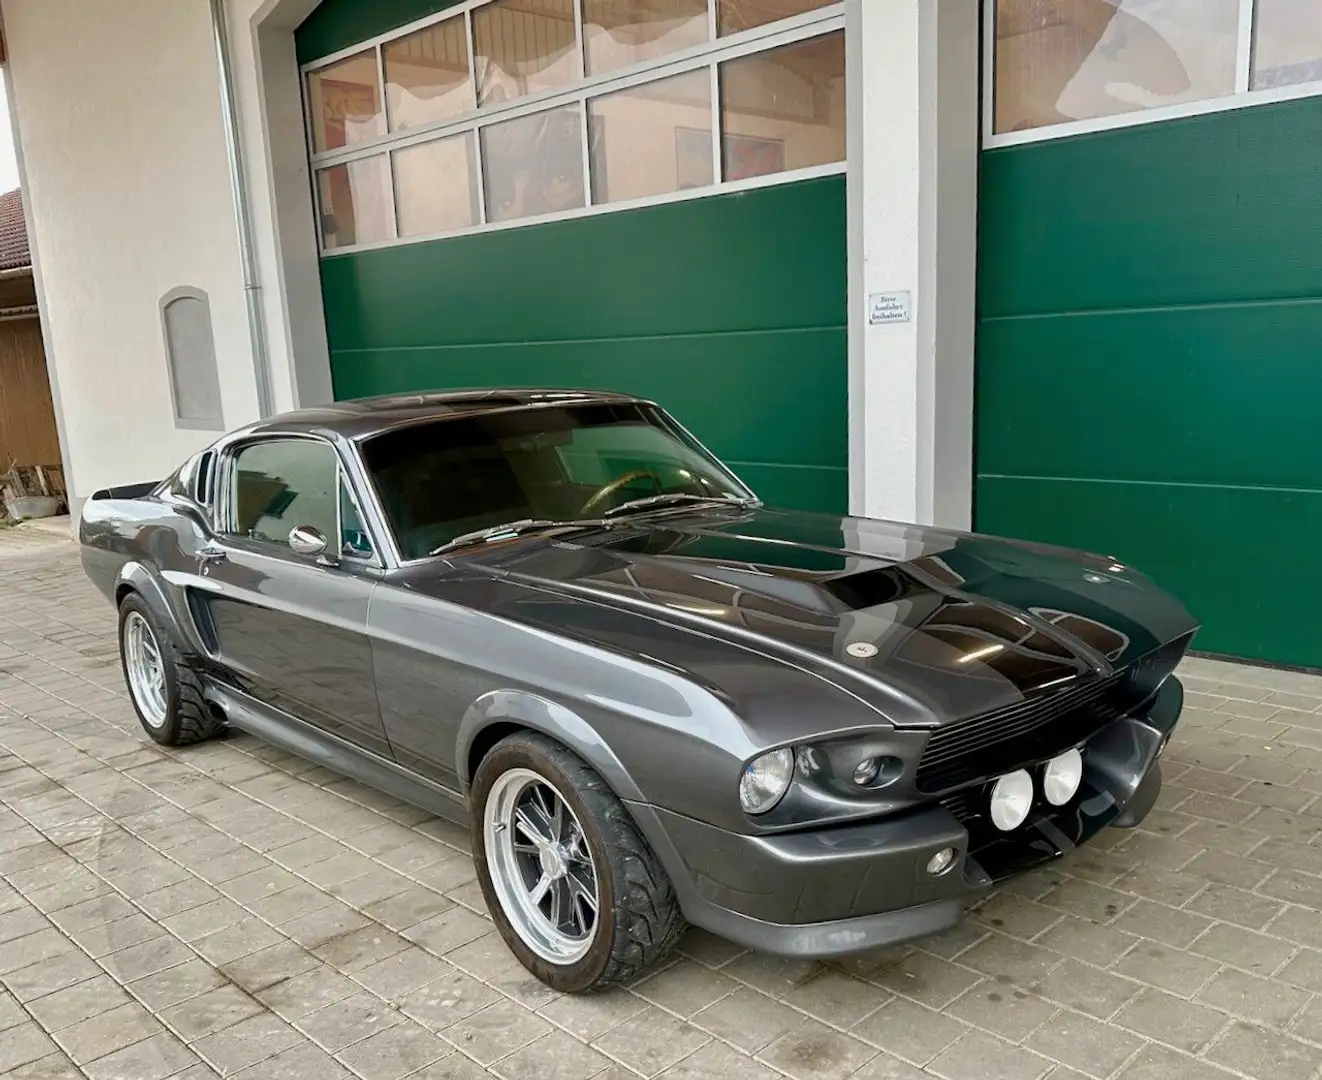 Ford Mustang Coupé in Grau gebraucht in Garching bei München für € 144.980,-